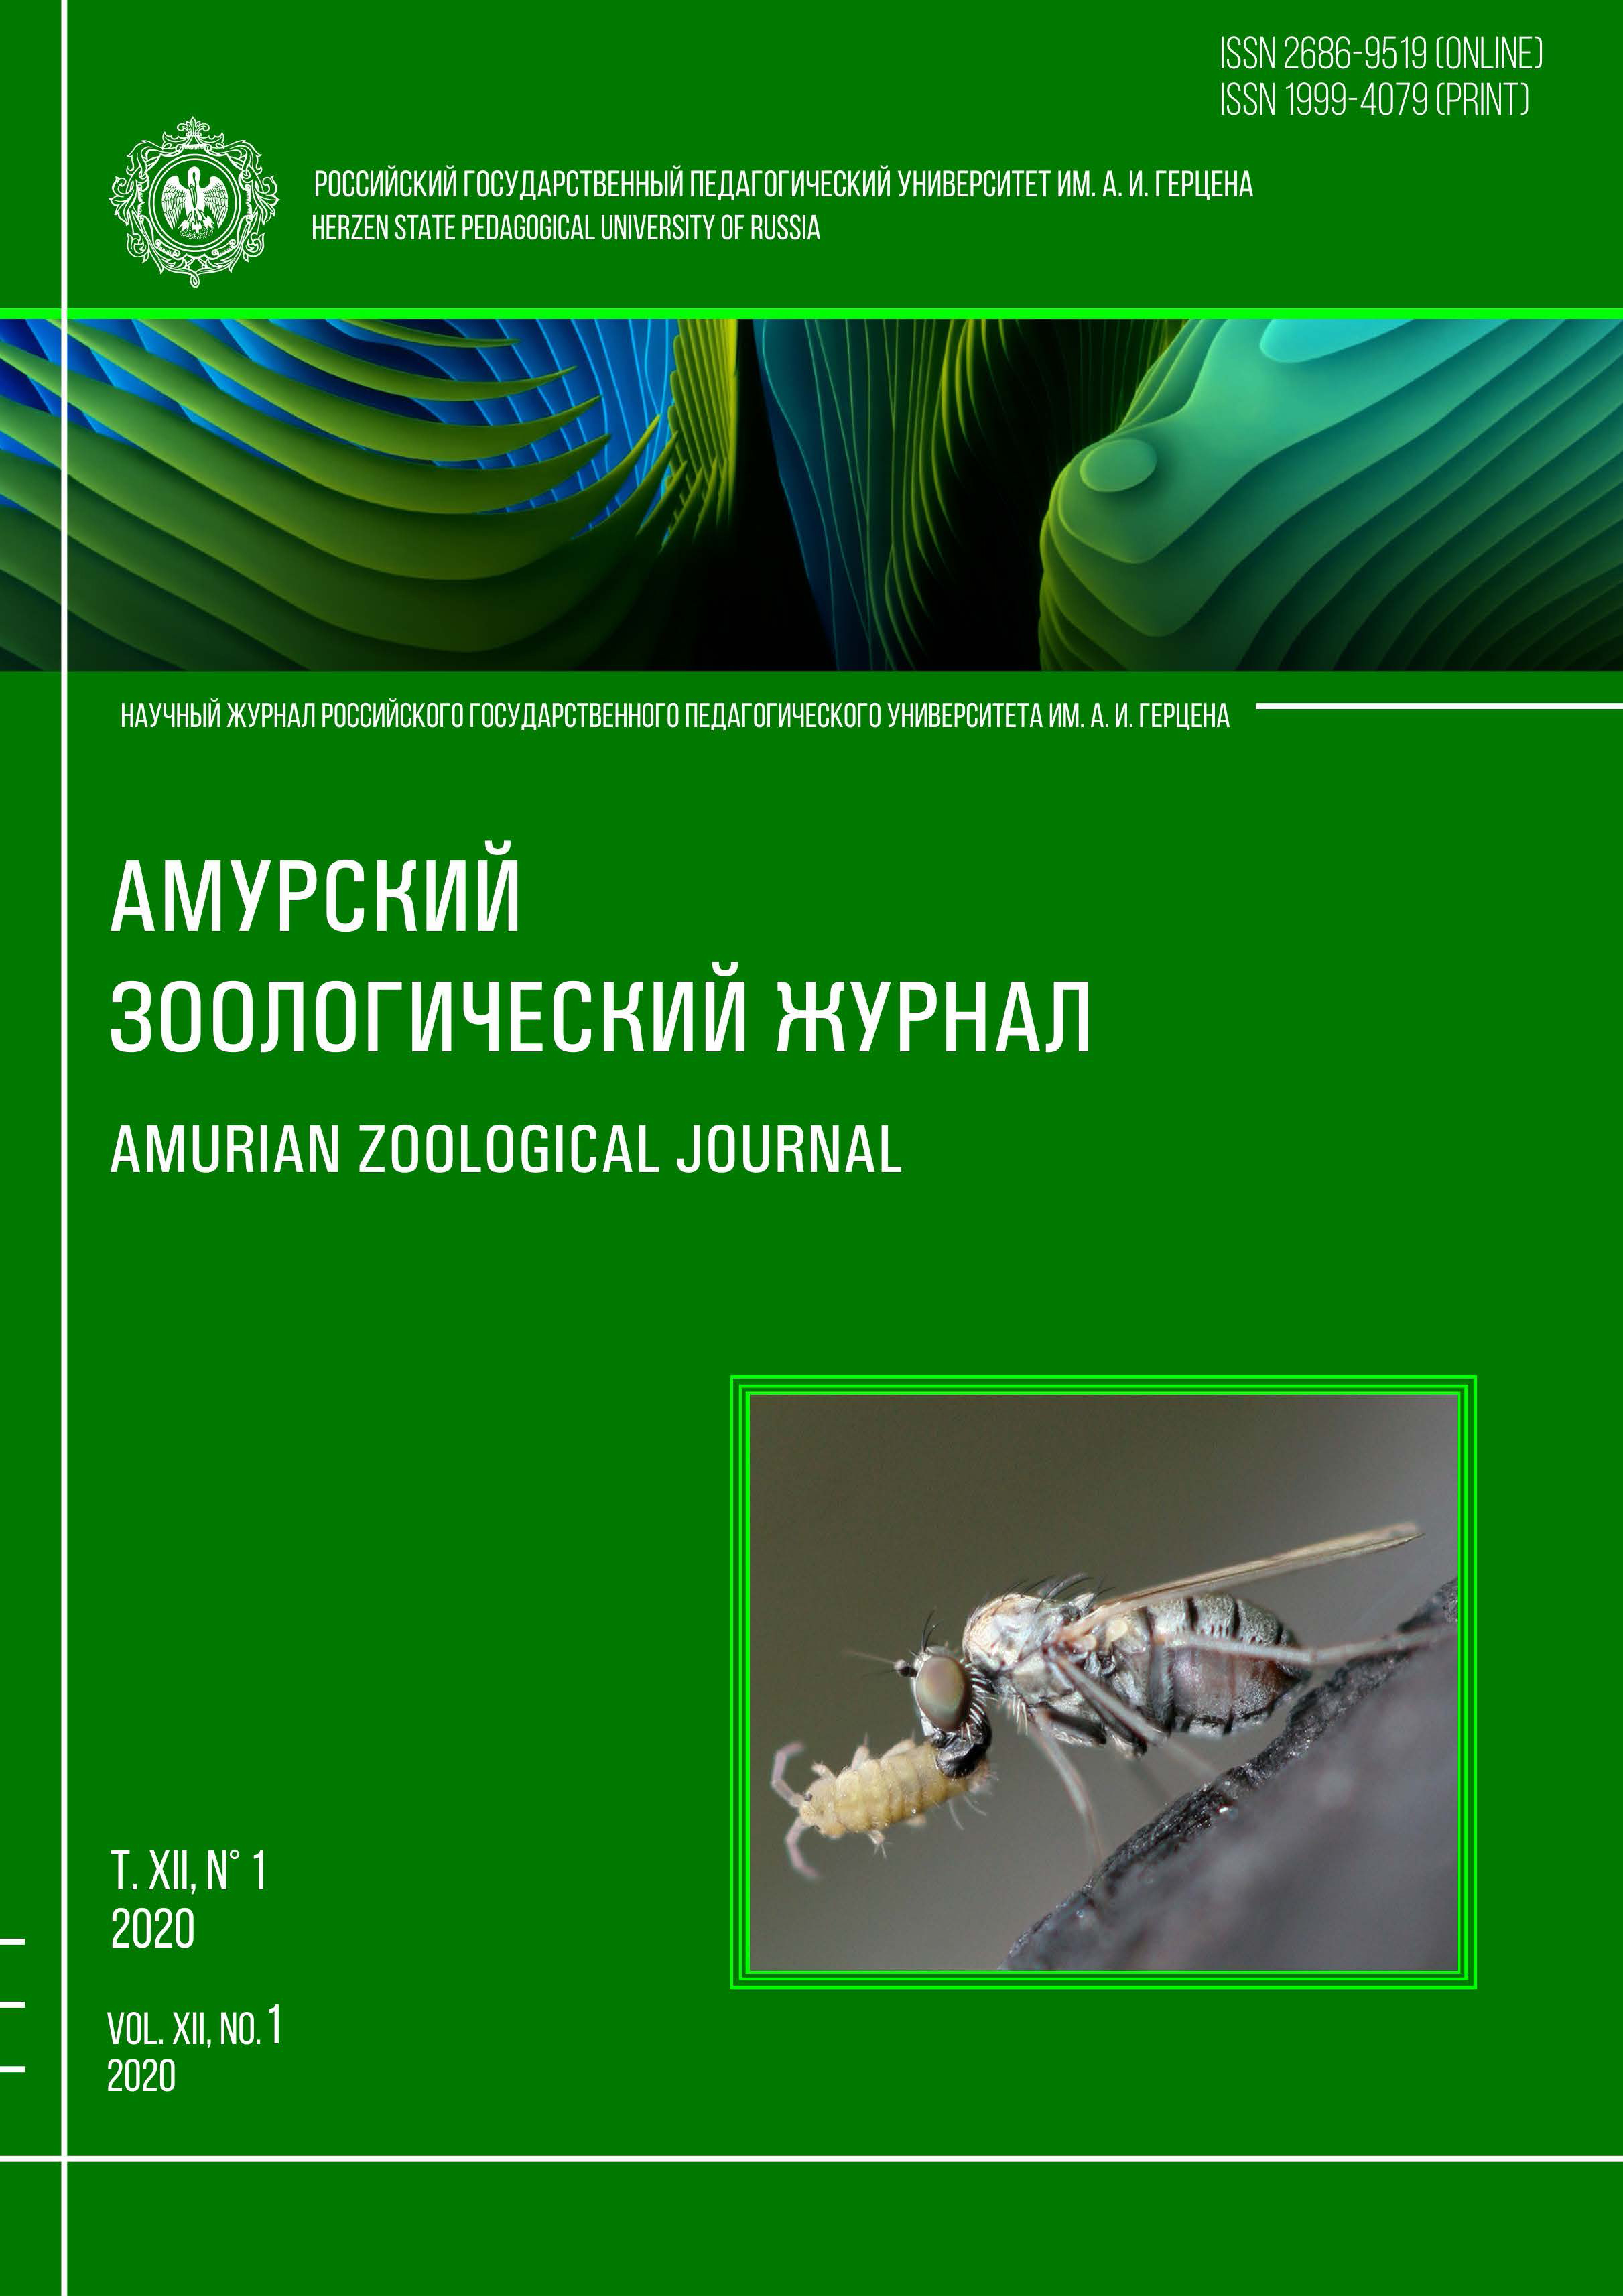 Обложка издания "Амурский зоологический журнал" (т. XII, № 1)